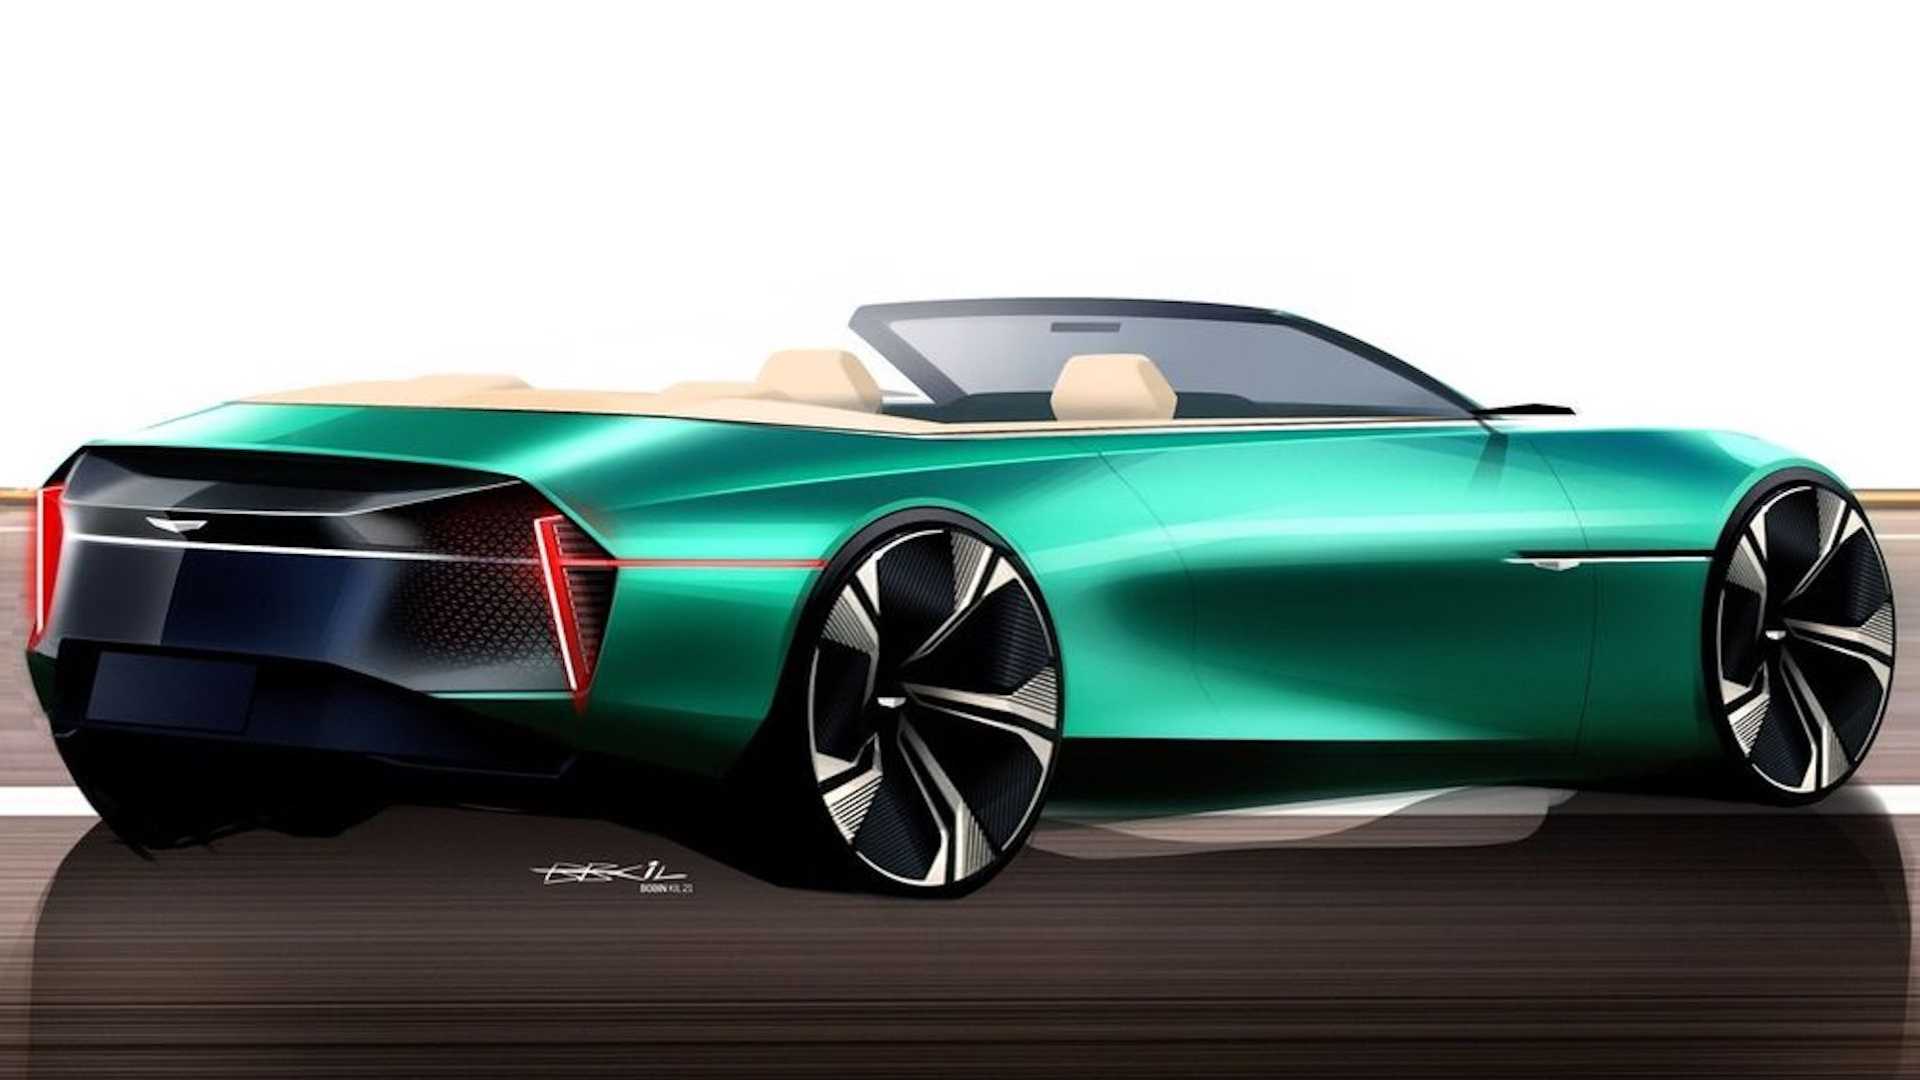 Representación de un auto deportivo convertible Cadillac compartido por GM Design Studio